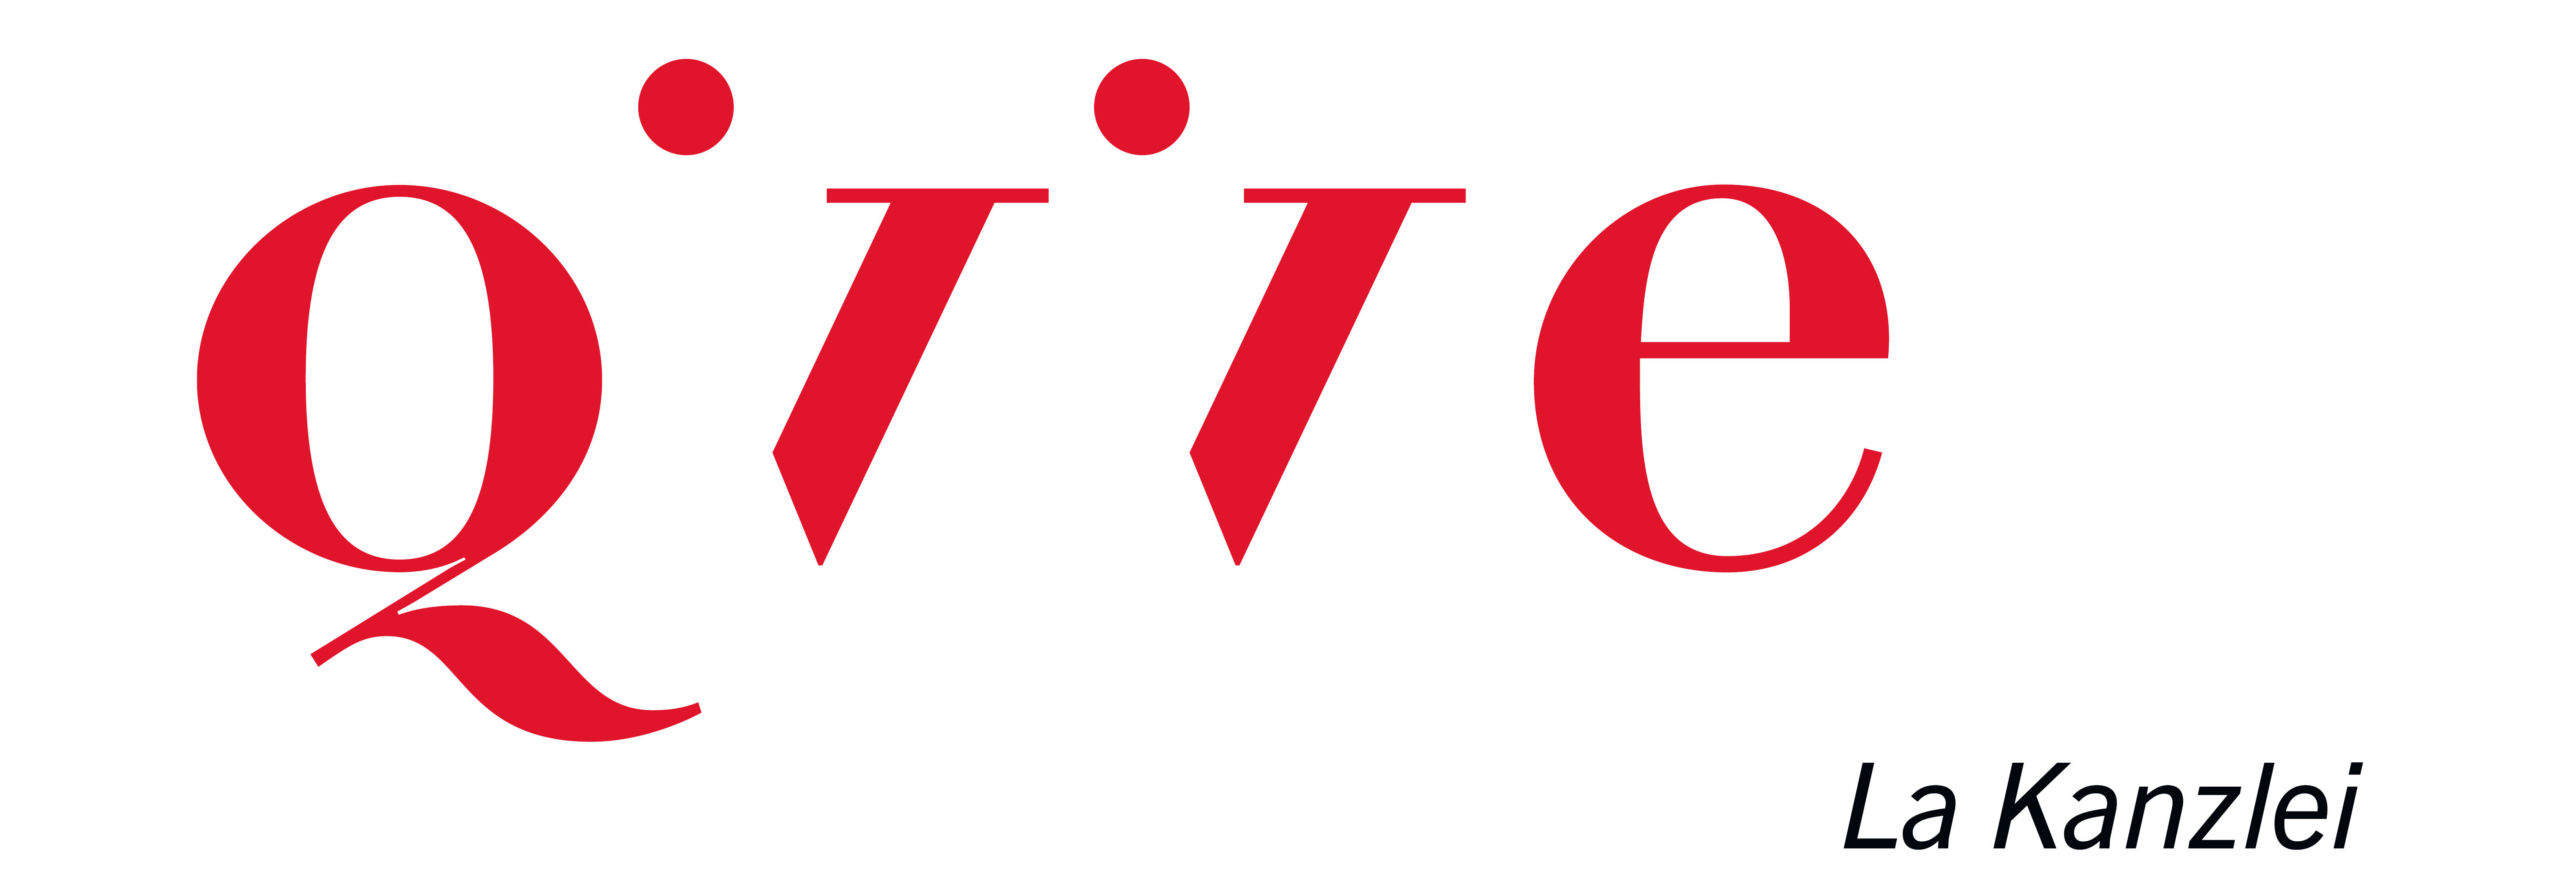 DFM Jahrbuch 20 Werbung Qivive Logo